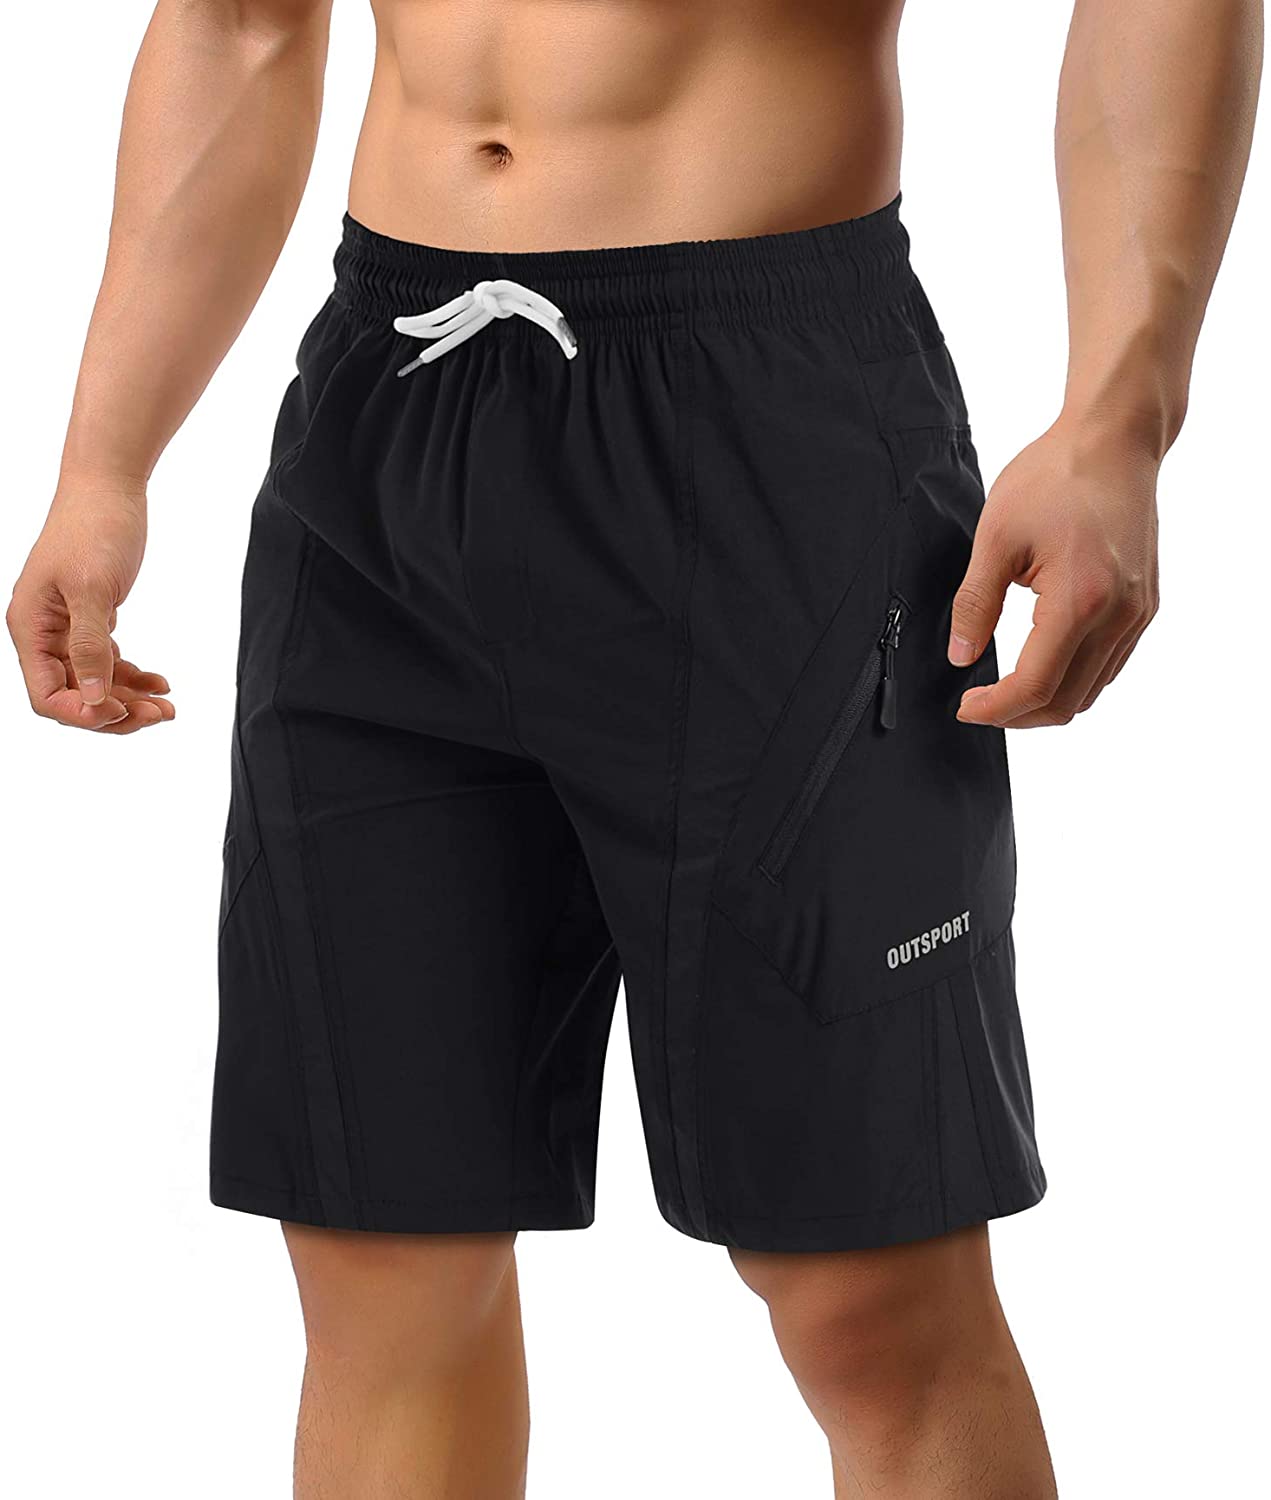 TACVASEN Reflektierende Linie Design Herren Schnell Trocknend Leichte Laufsport Fitness Shorts mit Reißverschlusstaschen